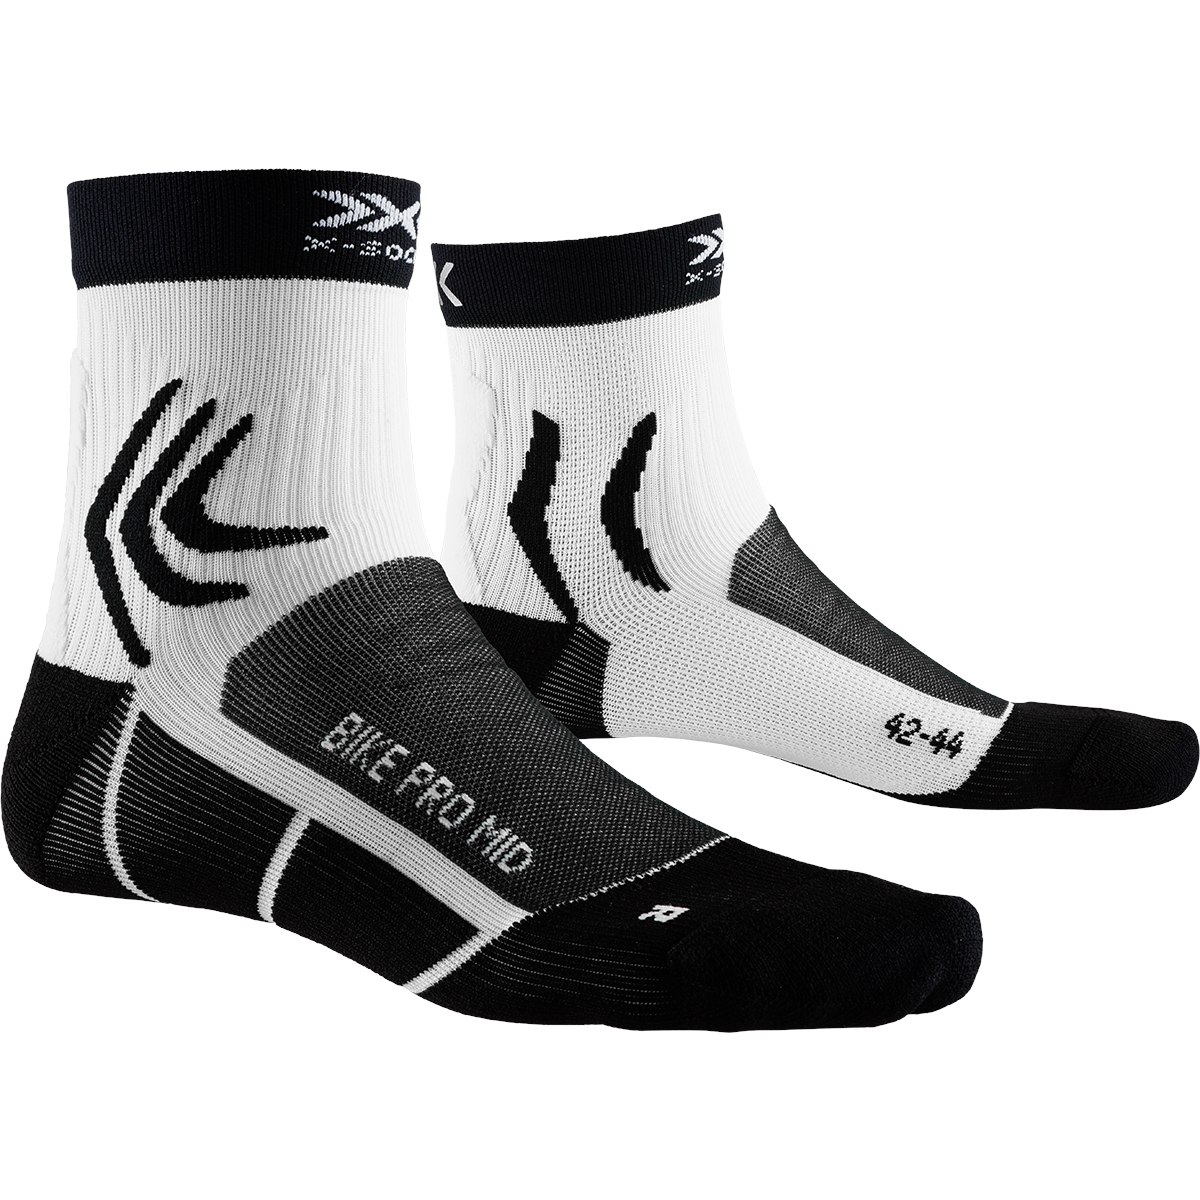 Produktbild von X-Socks Bike Pro Mid Radsocken - opal black/arctic white